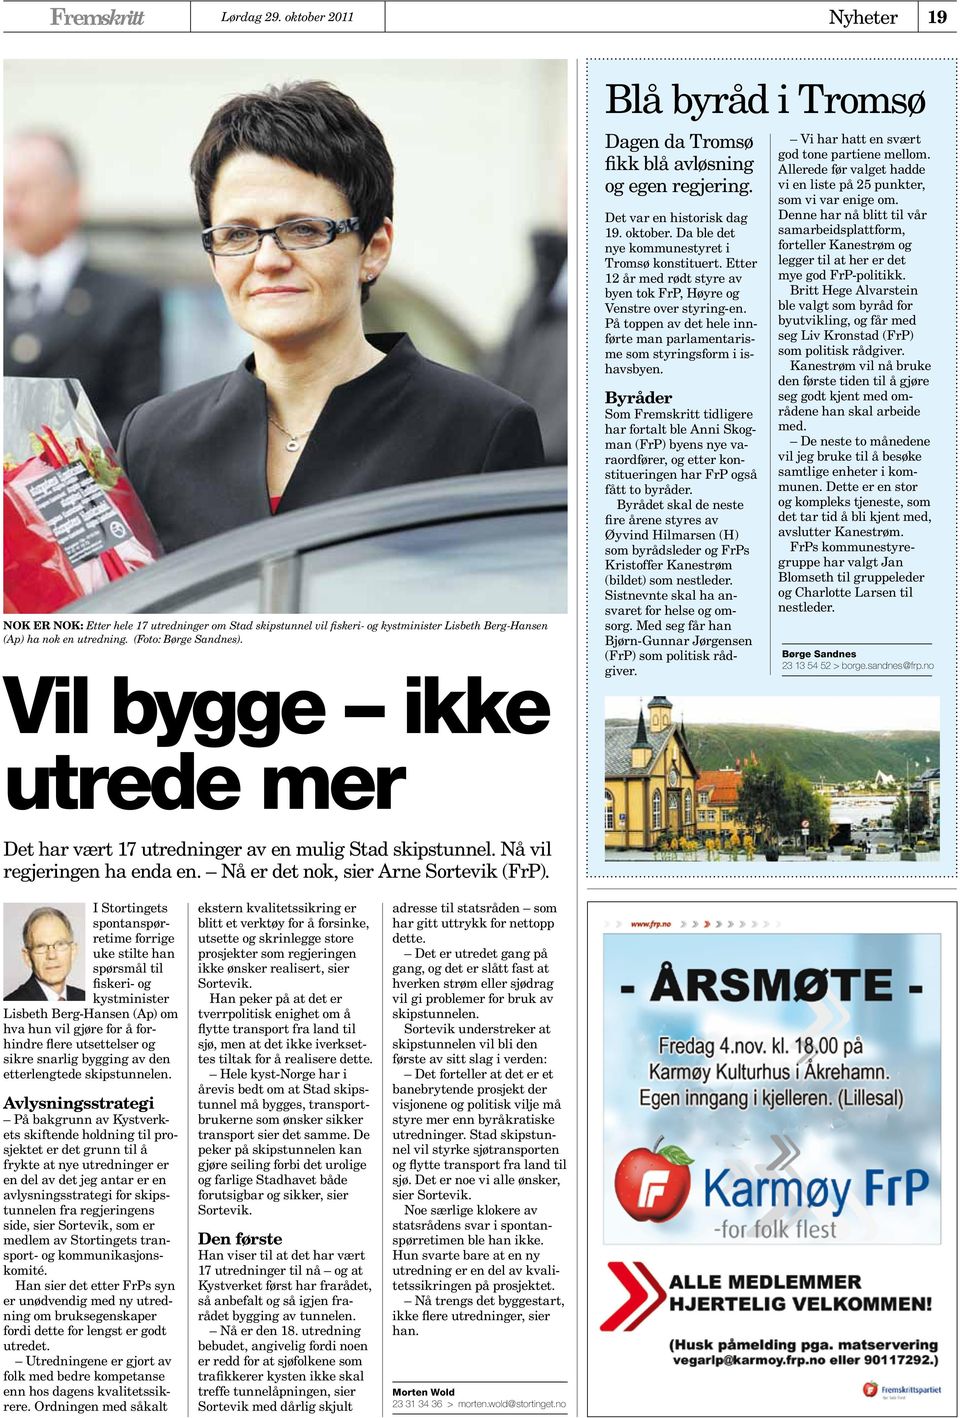 Etter 12 år med rødt styre av byen tok FrP, Høyre og Venstre over styring-en. På toppen av det hele innførte man parlamentarisme som styringsform i ishavsbyen.